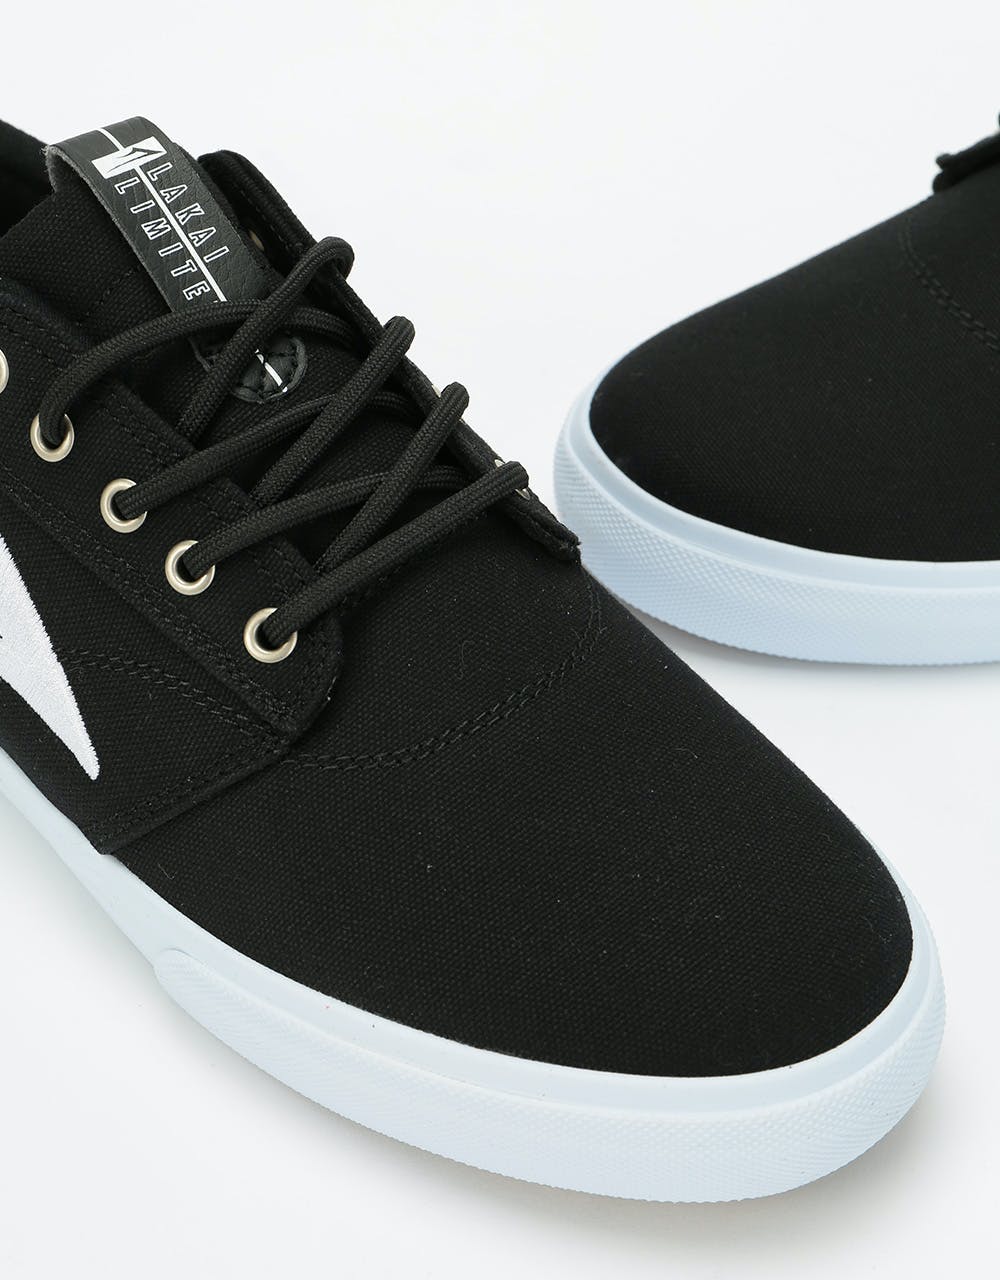 Lakai Griffin Textile Skate Shoes - Black Canvas